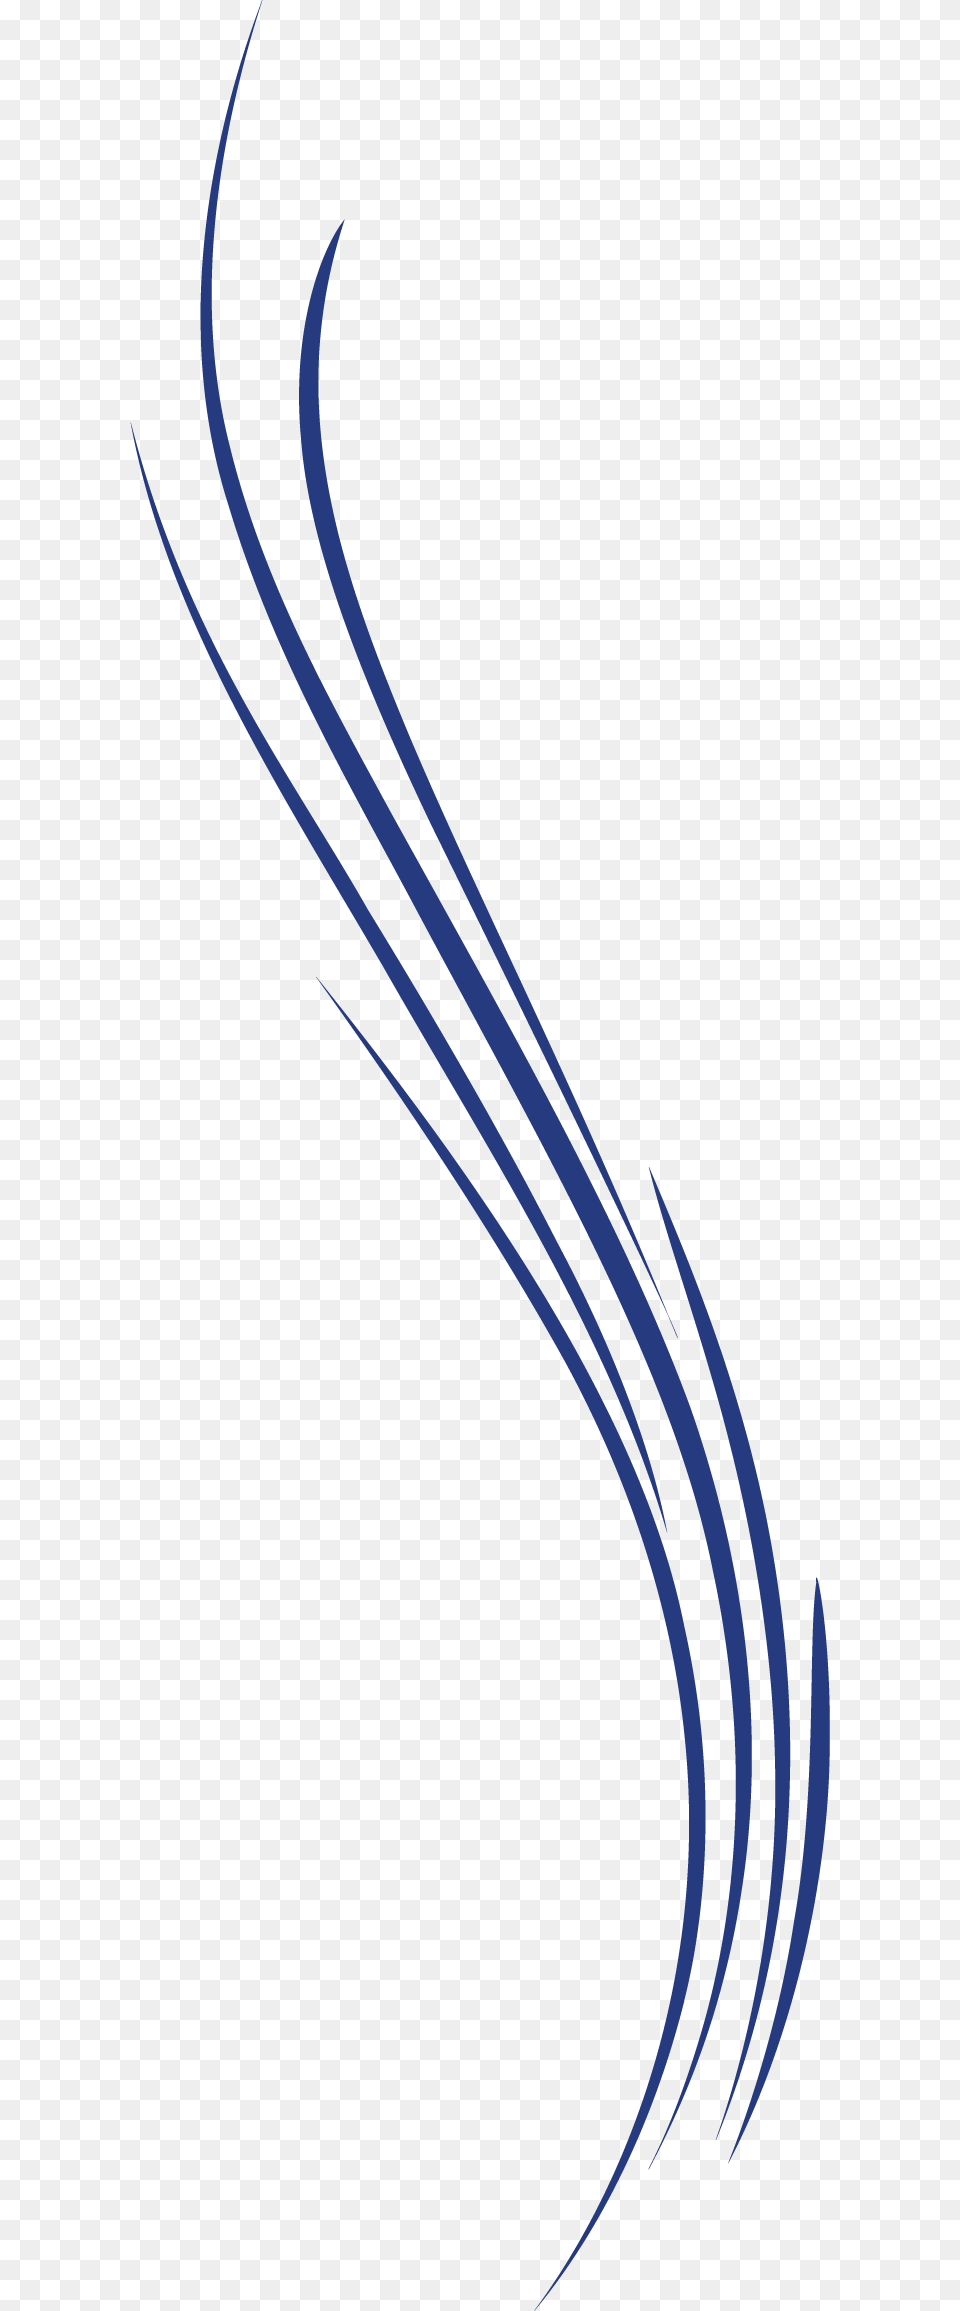 Curve Line Euclidean Vector Electric Blue, Art, Floral Design, Graphics, Pattern Png